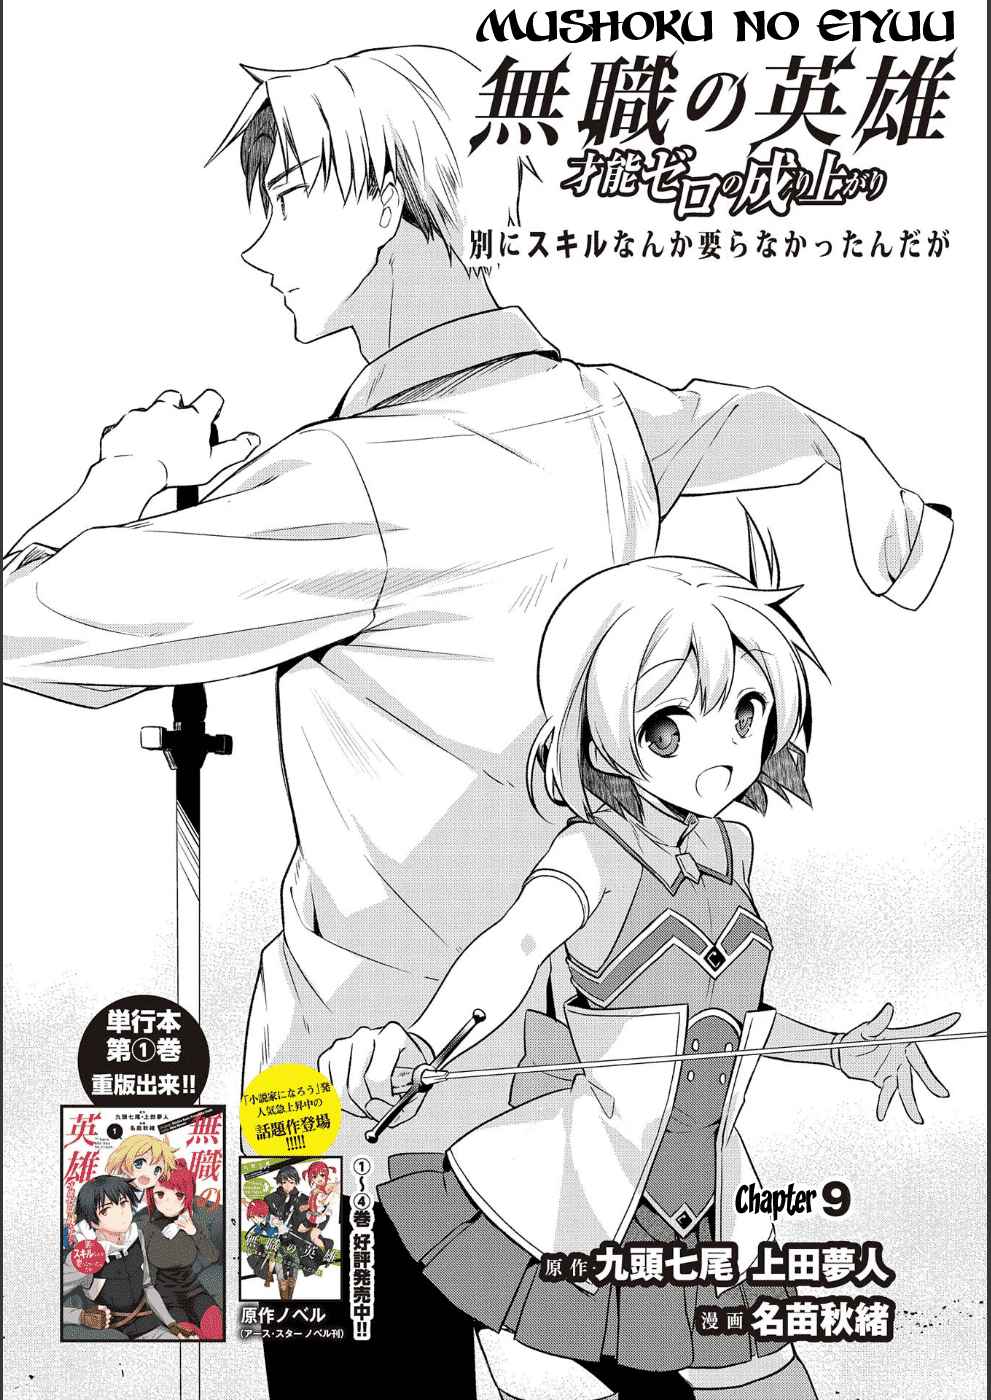 Mushoku no Eiyuu: Betsu ni Skill Nanka Iranakattan daga Vol. 2 Ch. 9